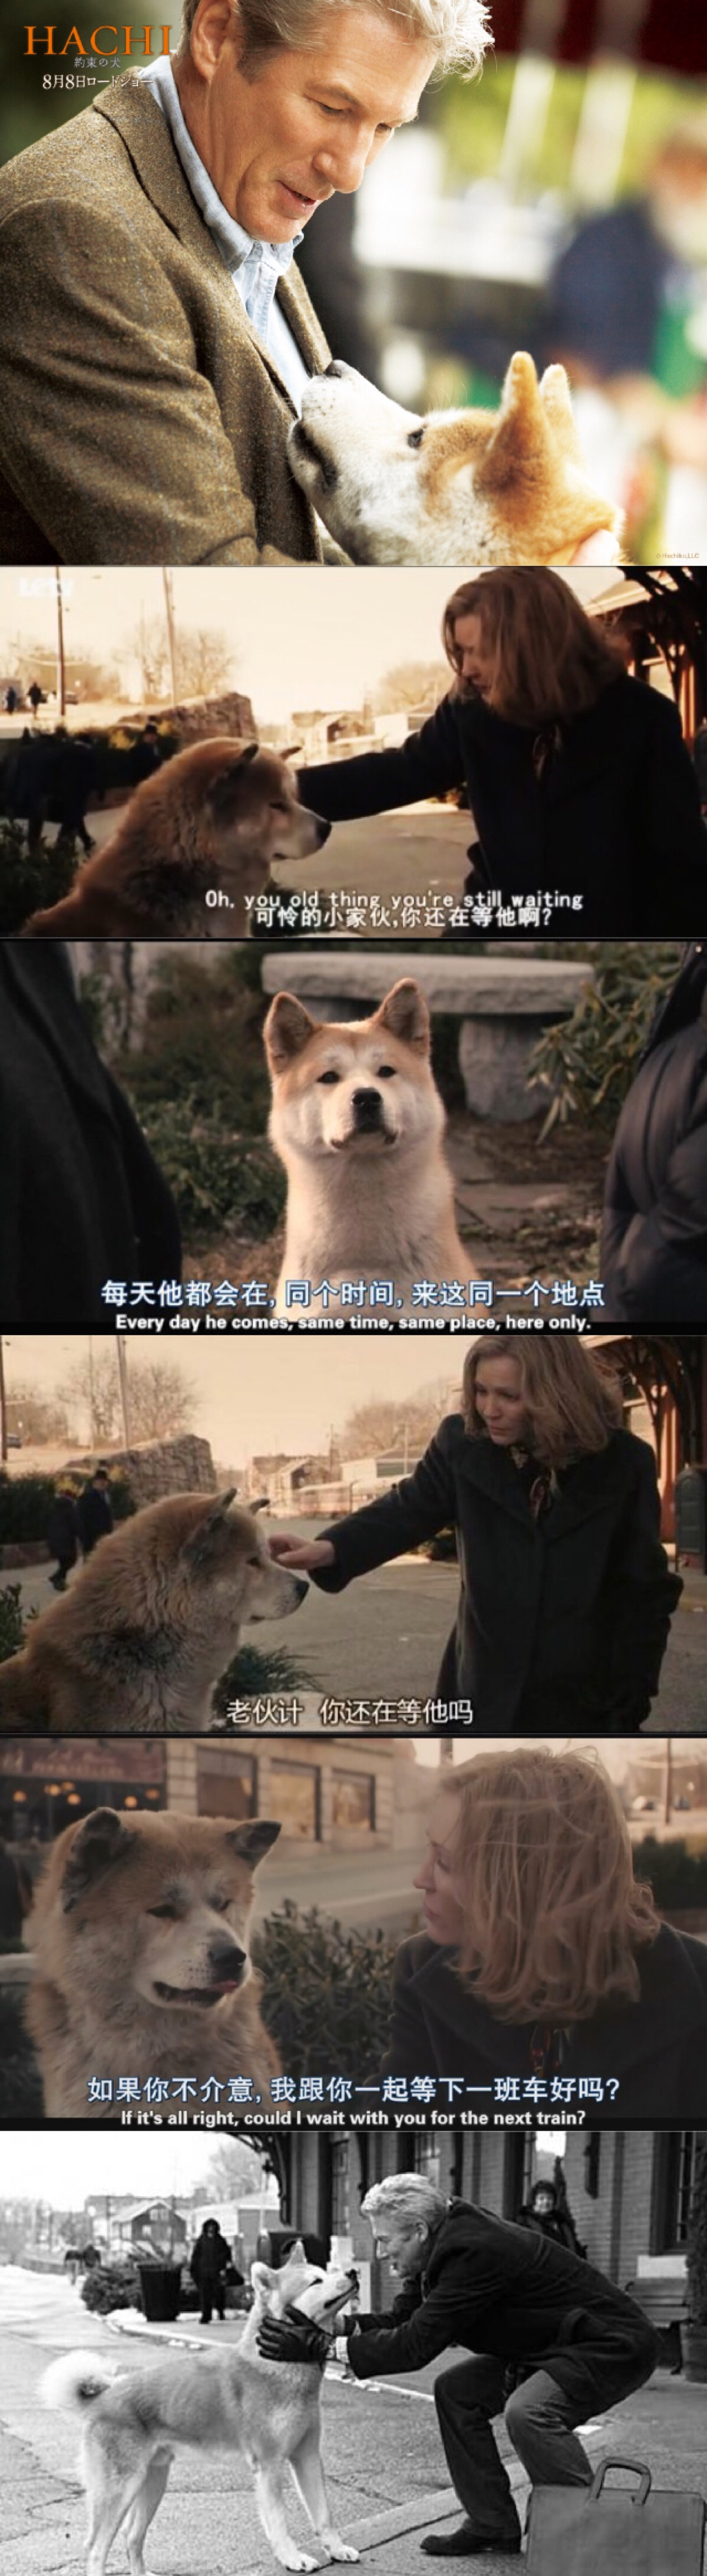 这是一只秋田犬的故事"忠犬八公"应该很多人都看过,非常经典!